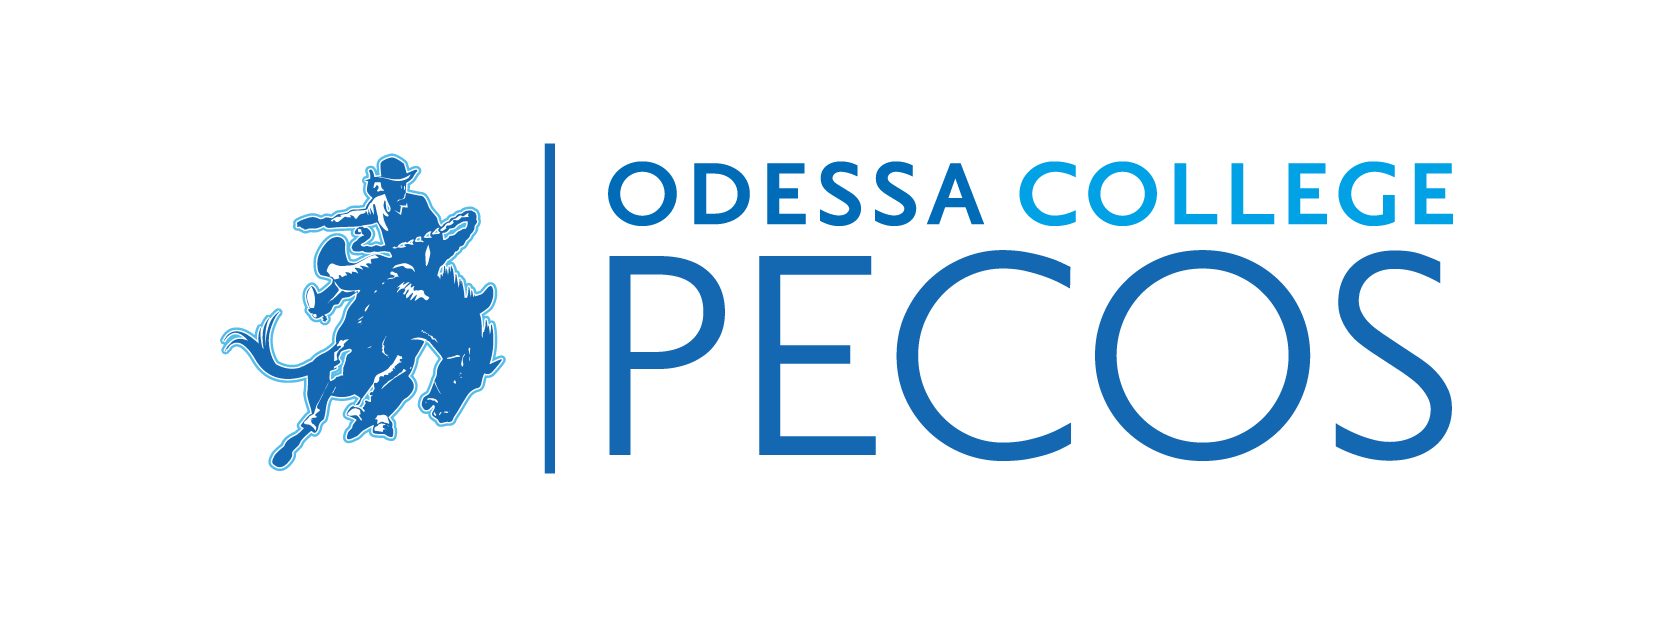 Pecos_Logo2.png